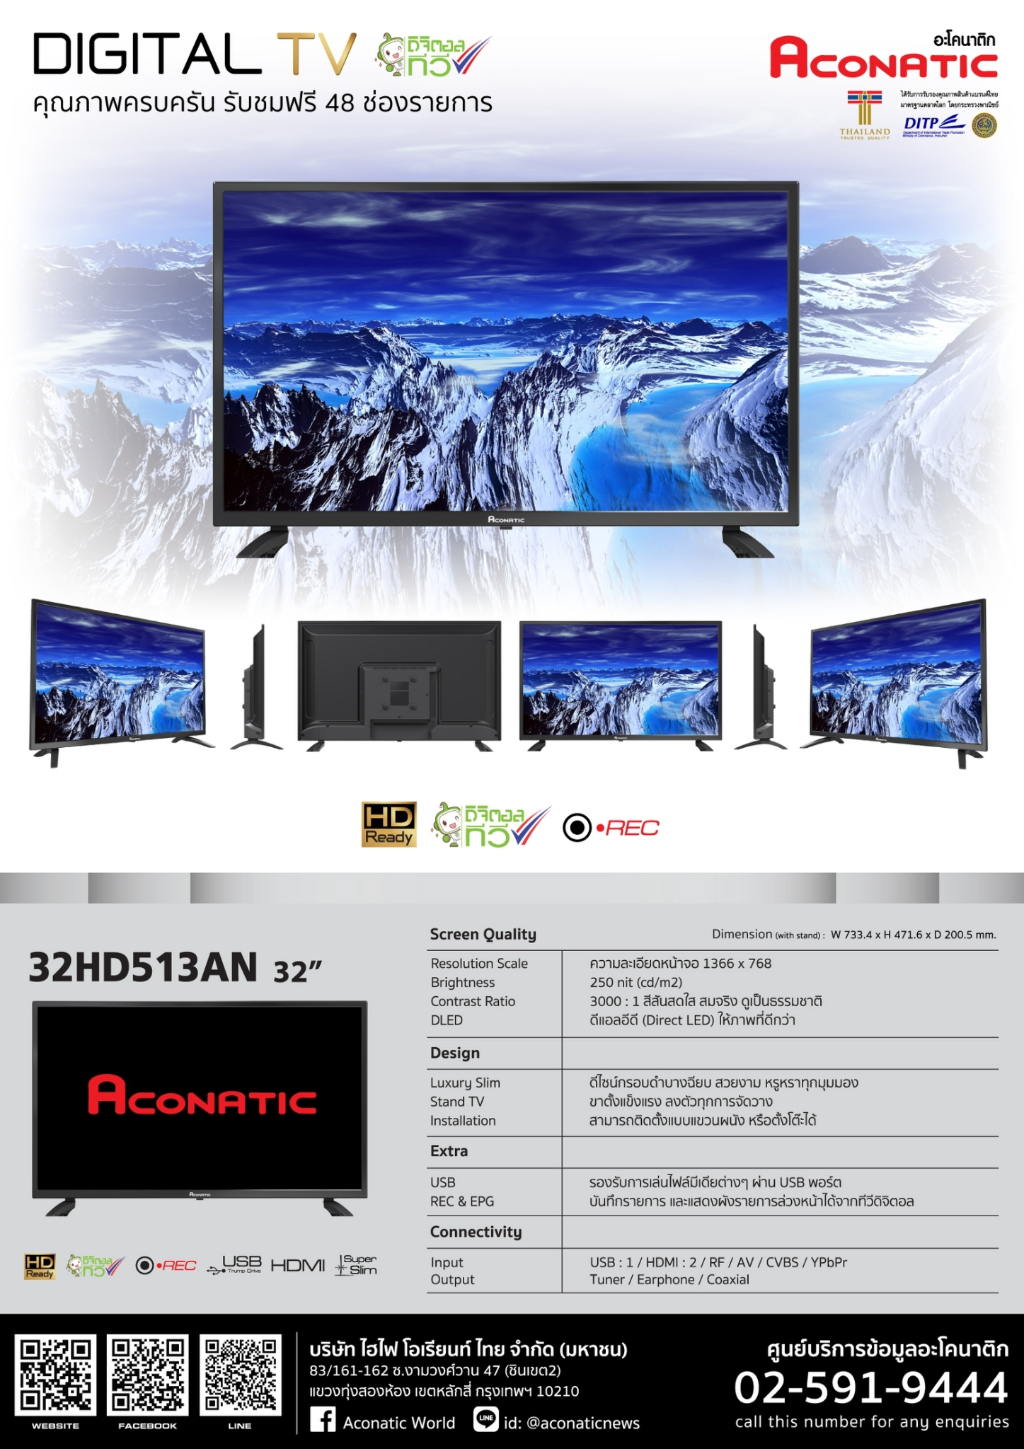 ข้อมูลประกอบของ Aconatic LED Digital TV HD แอลอีดี ดิจิตอลทีวี ขนาด 32 นิ้ว รุ่น 32HD513AN (รับประกัน 1 ปี)